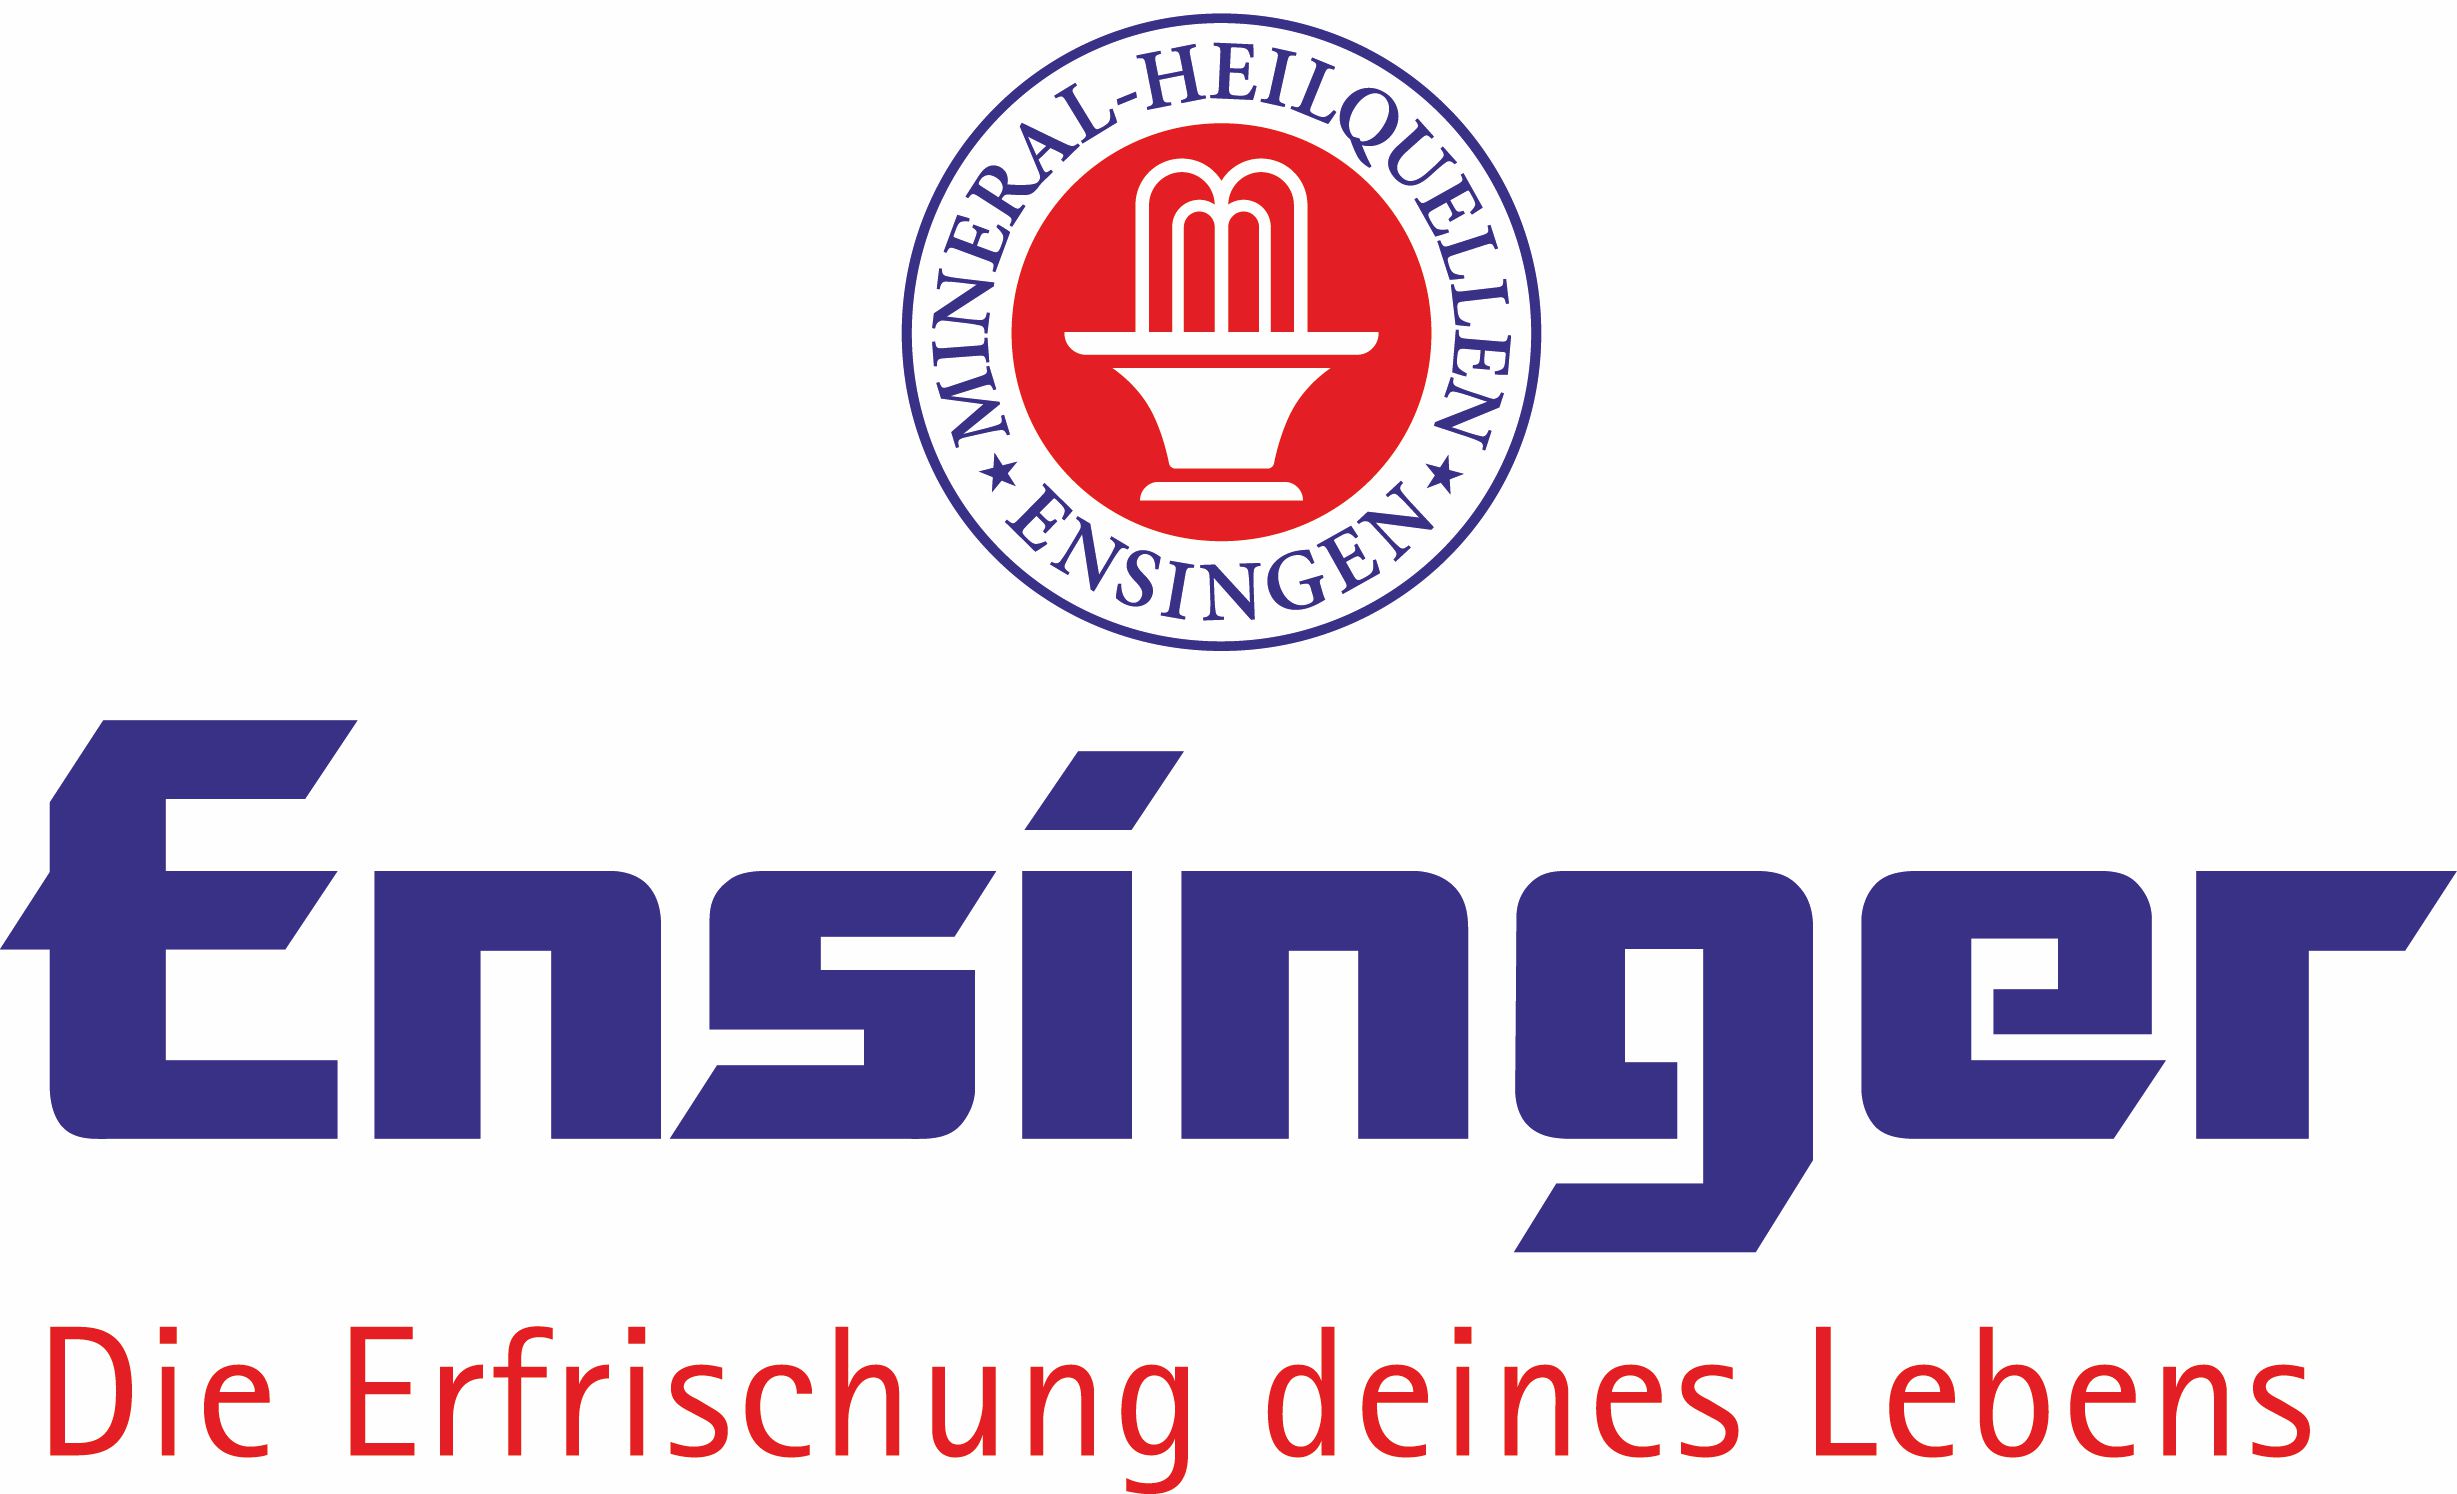 NEU Logo-Ensinger-oben-2c-rgb.jpg